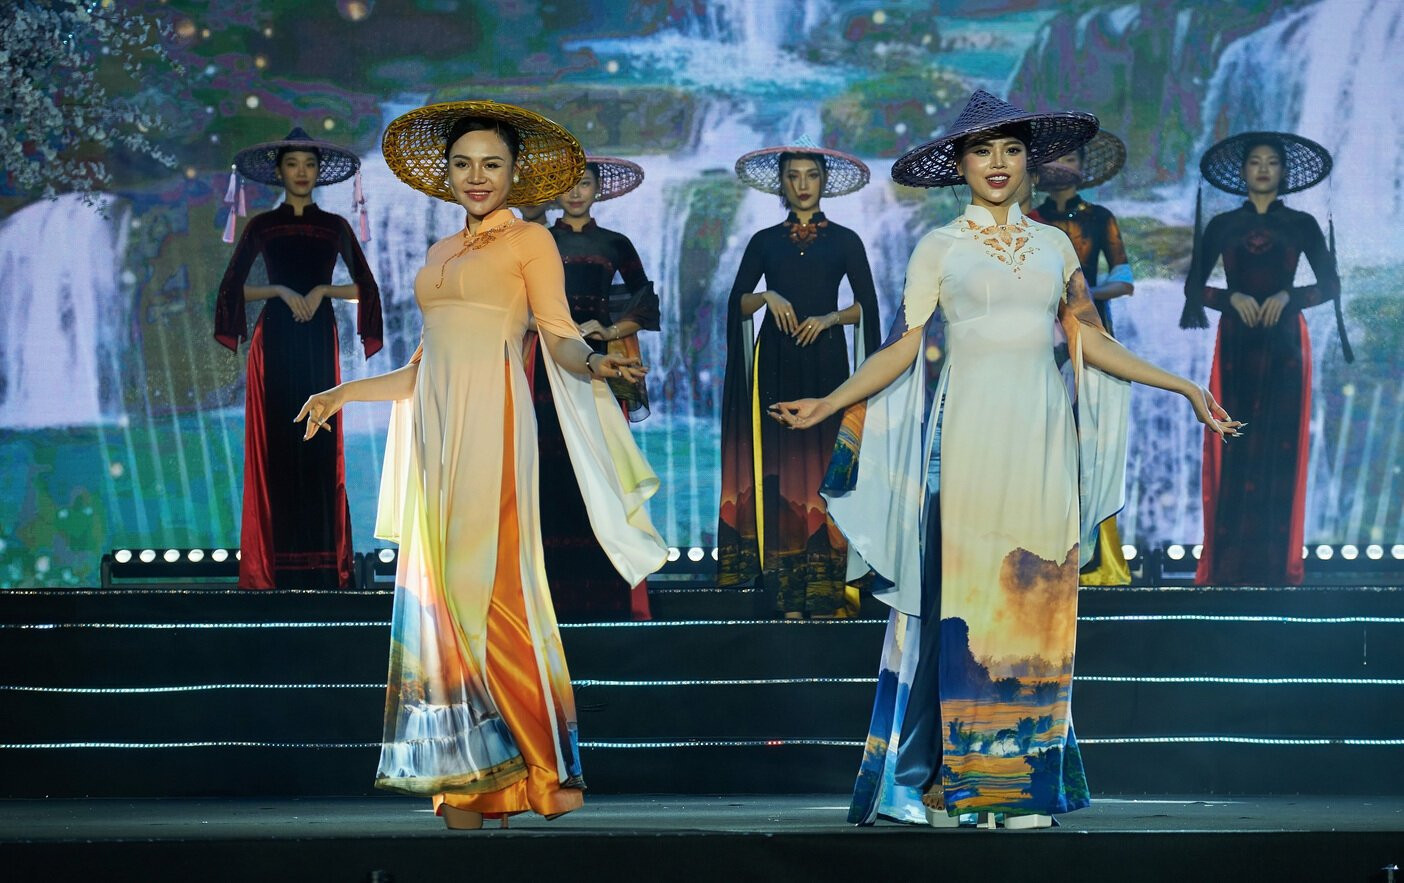 Nhà thiết kế người Tày thực hiện với mong muốn giữ gìn và phát huy hơn nữa những giá trị văn hoá truyền thống, các di sản văn hoá đậm đà bản sắc dân tộc của Cao Bằng.